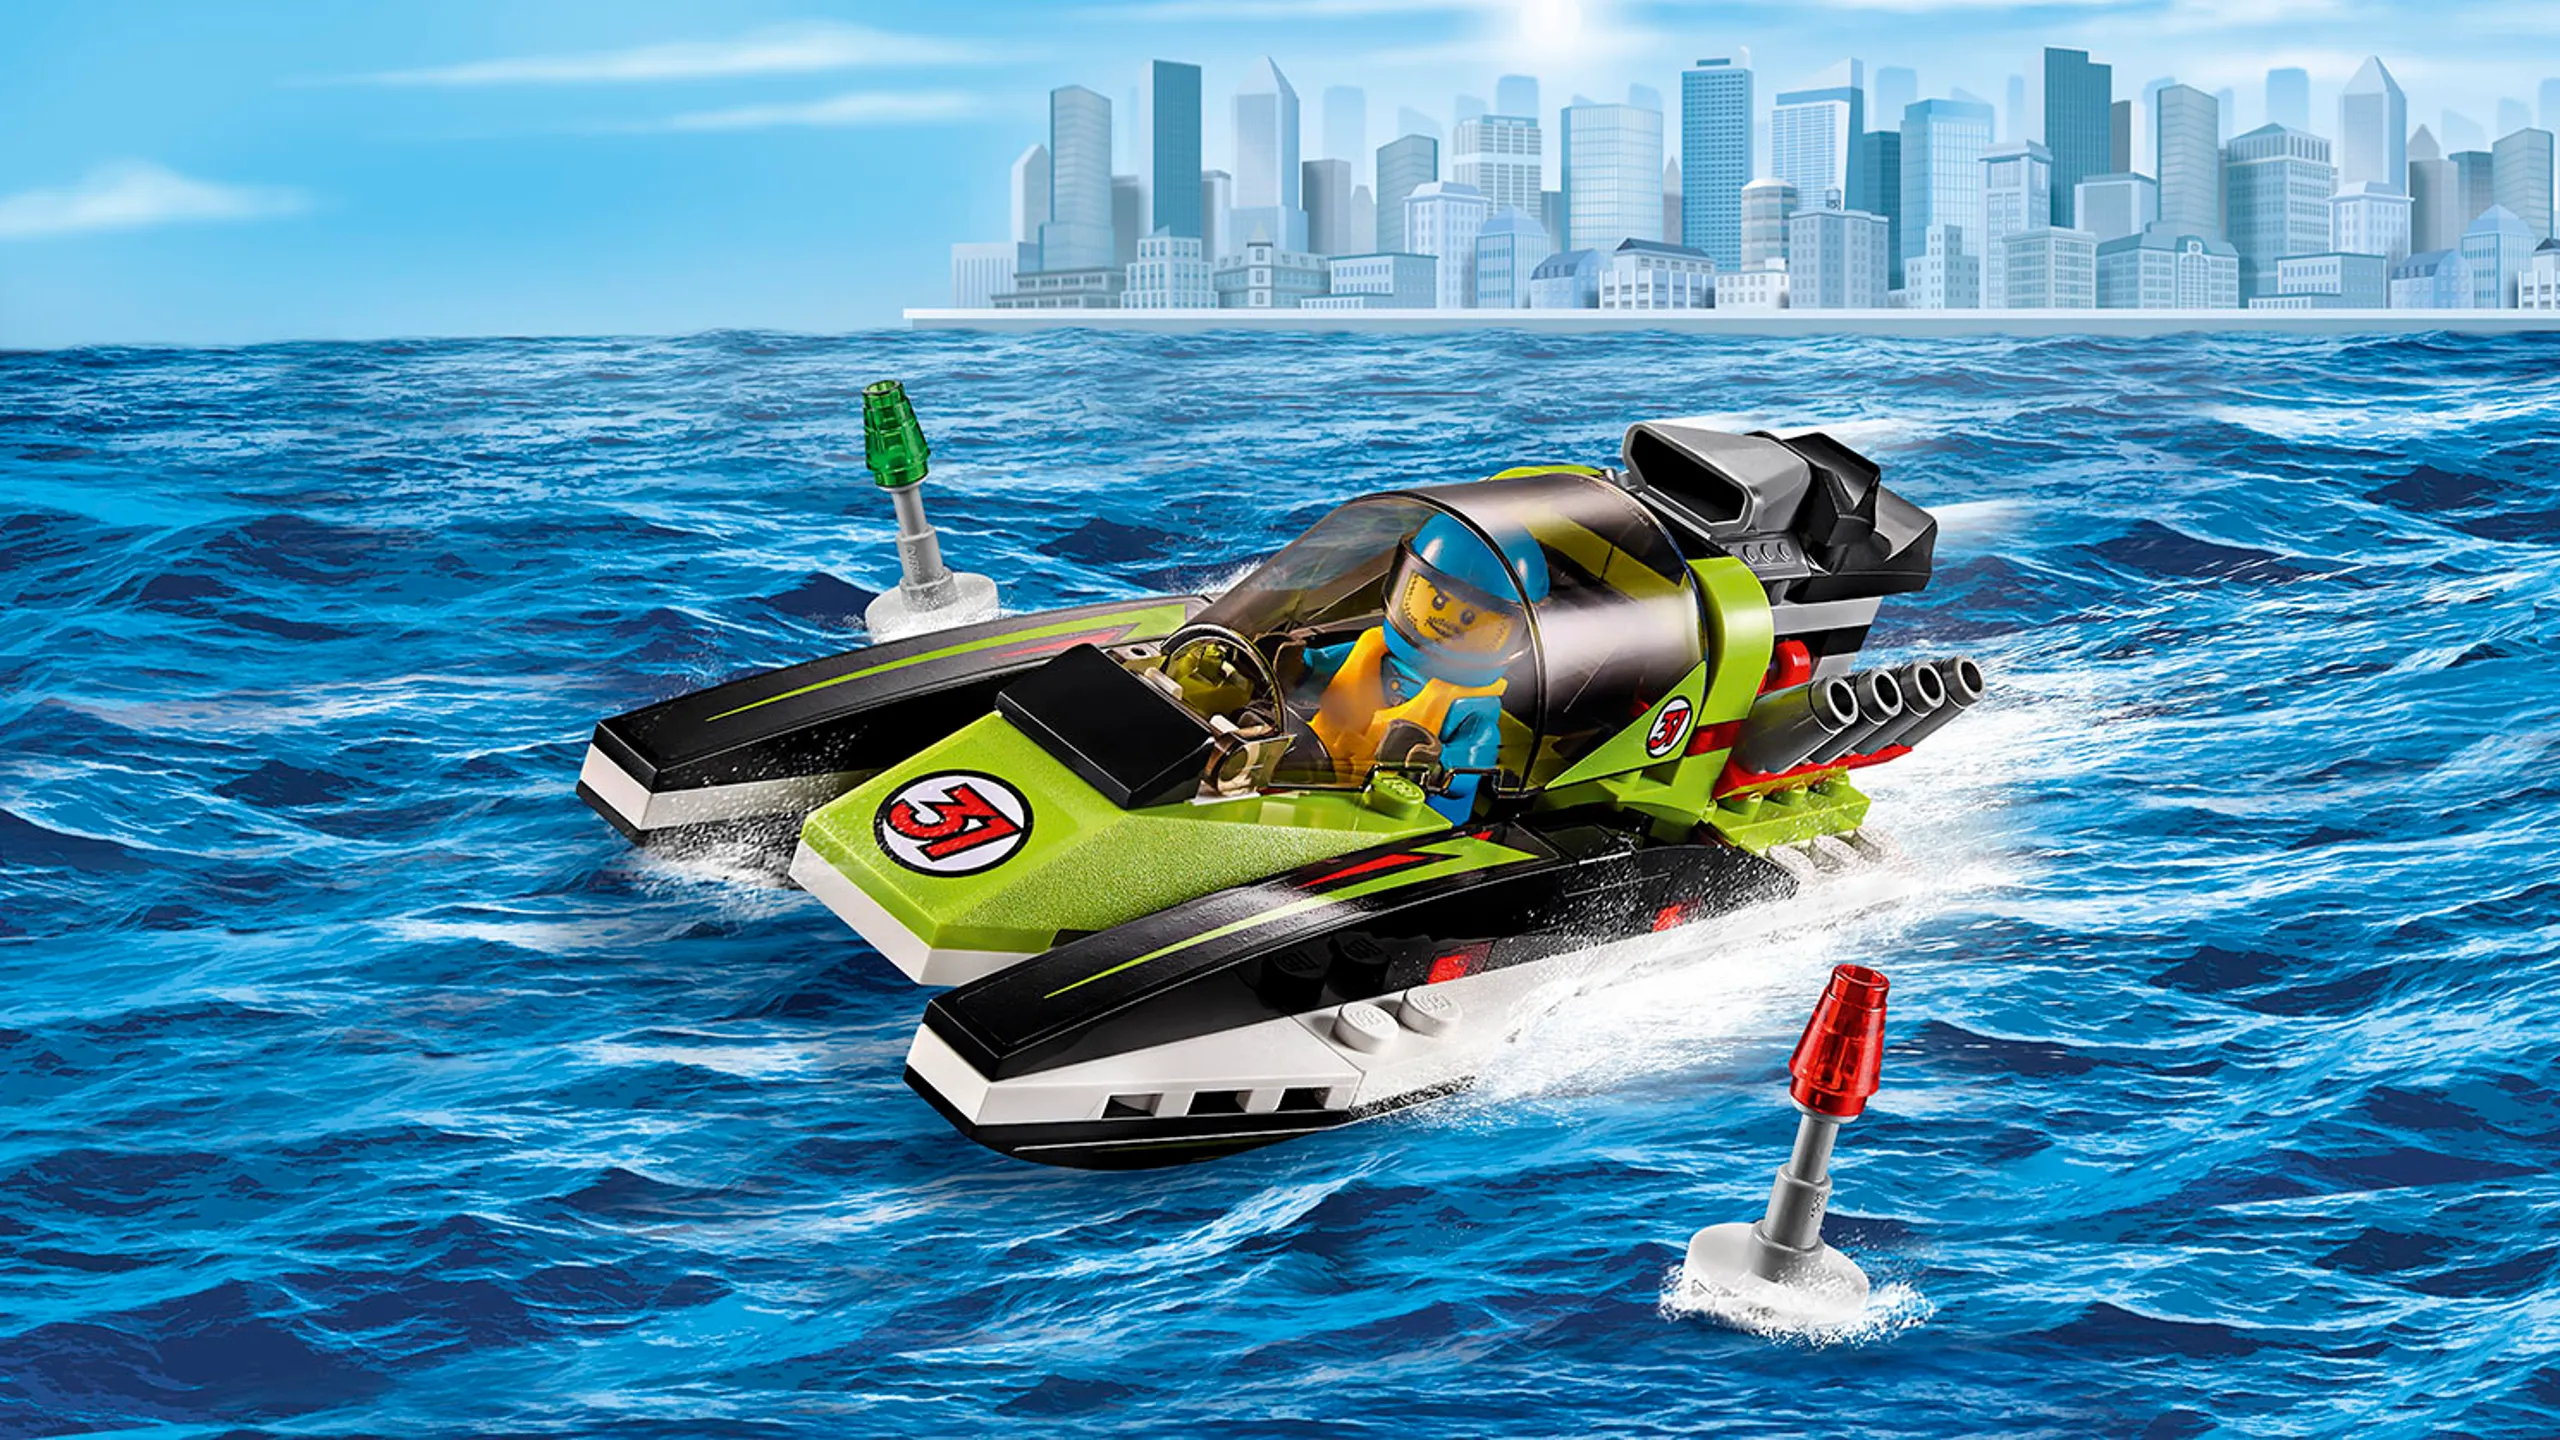 Superpojazdy LEGO City: zielona łódź wyścigowa — Łódź wyścigowa 60114